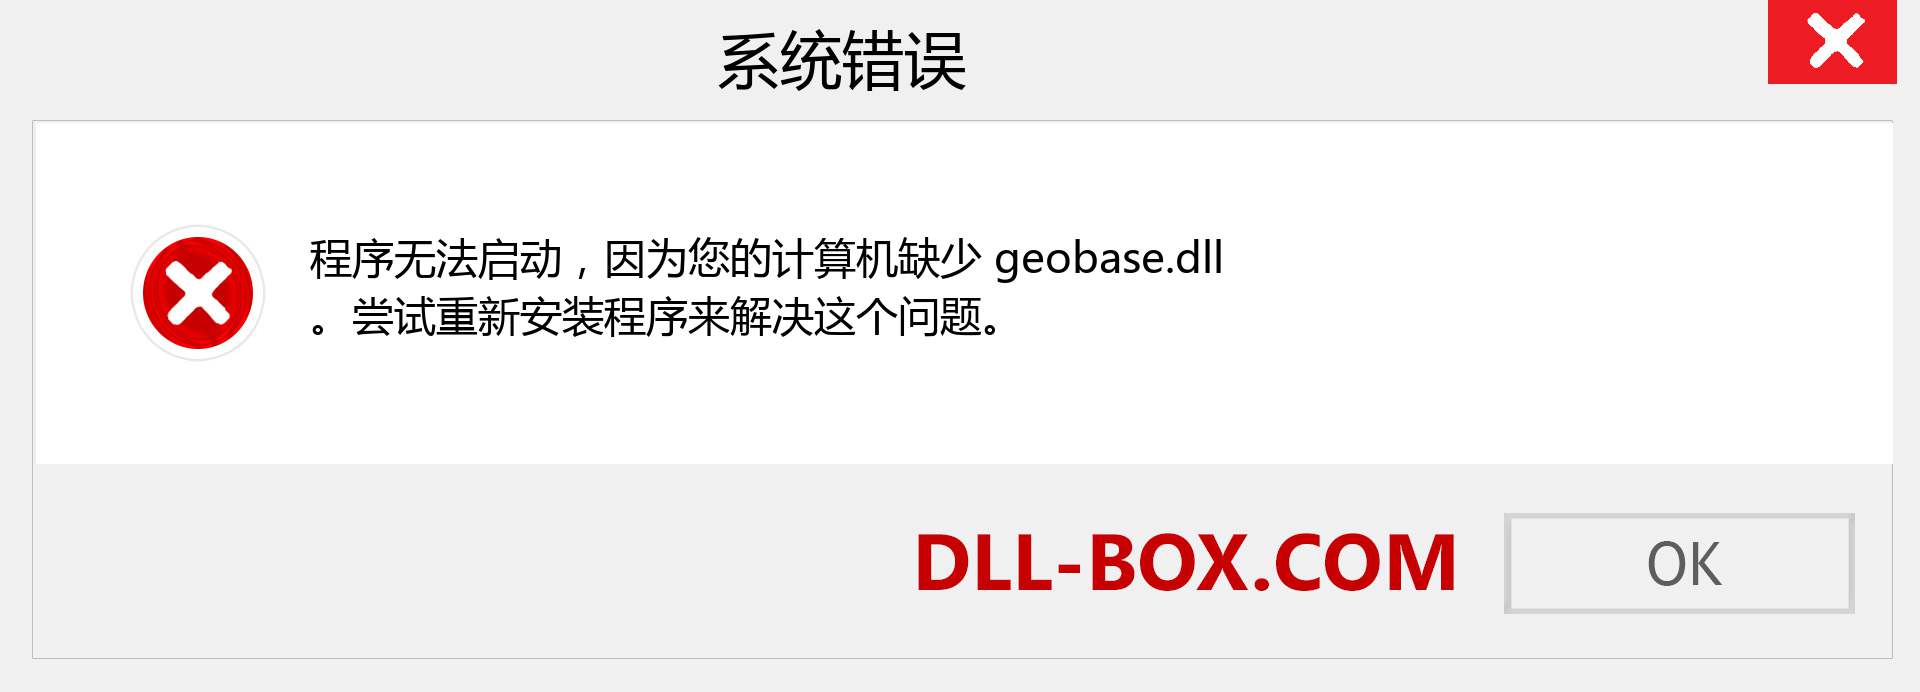 geobase.dll 文件丢失？。 适用于 Windows 7、8、10 的下载 - 修复 Windows、照片、图像上的 geobase dll 丢失错误